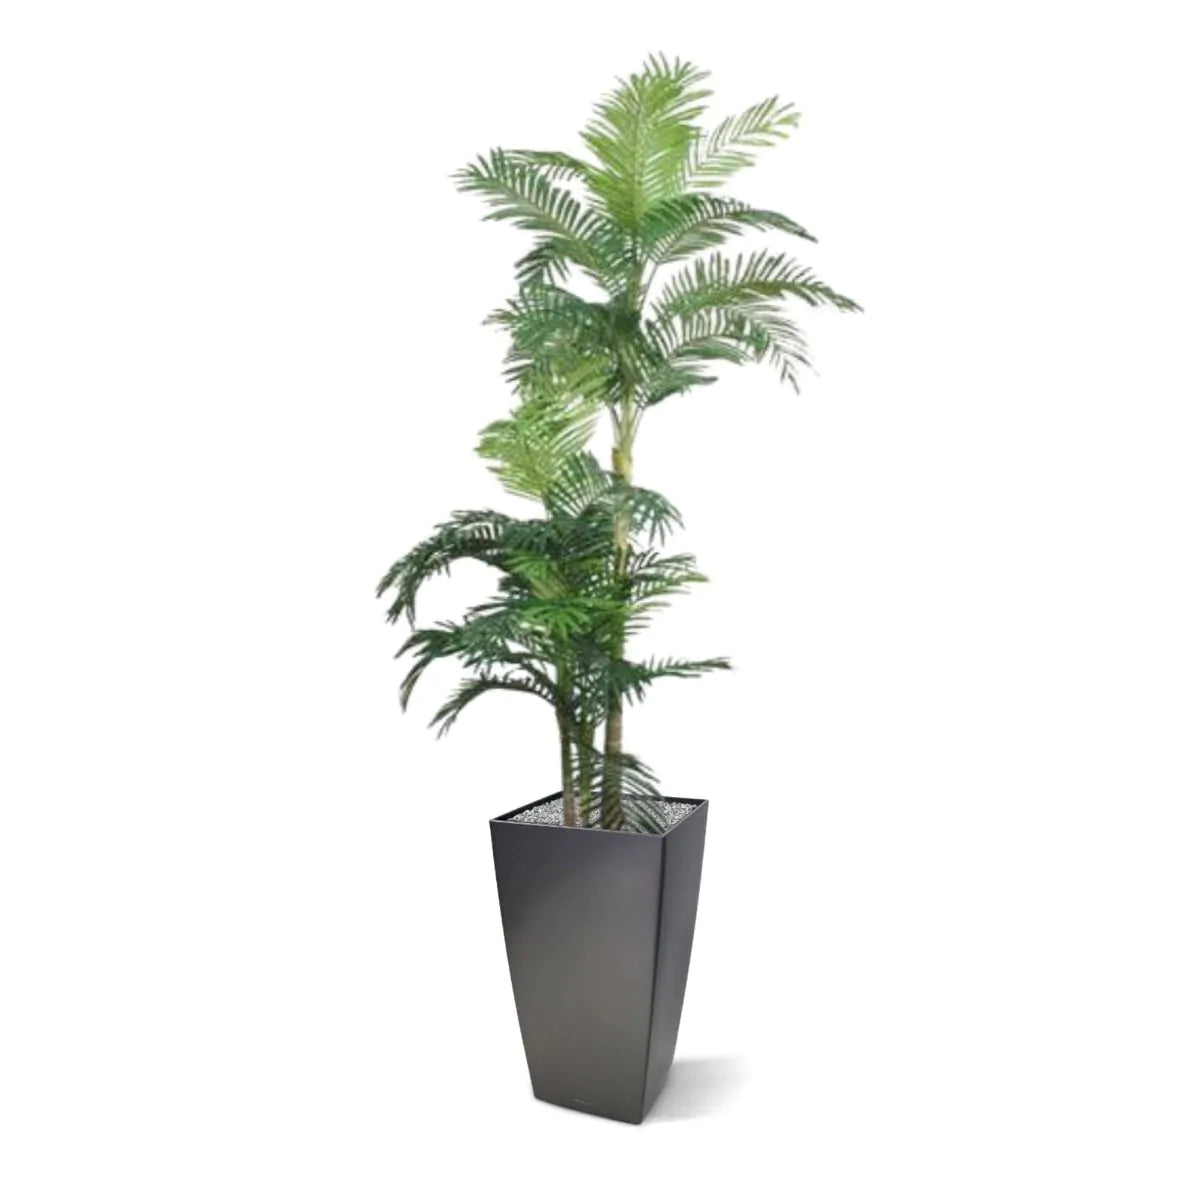 Pflanzenglanz® Golden Cane Areca Kunstpalme 180 cm mit 3 Stämmen